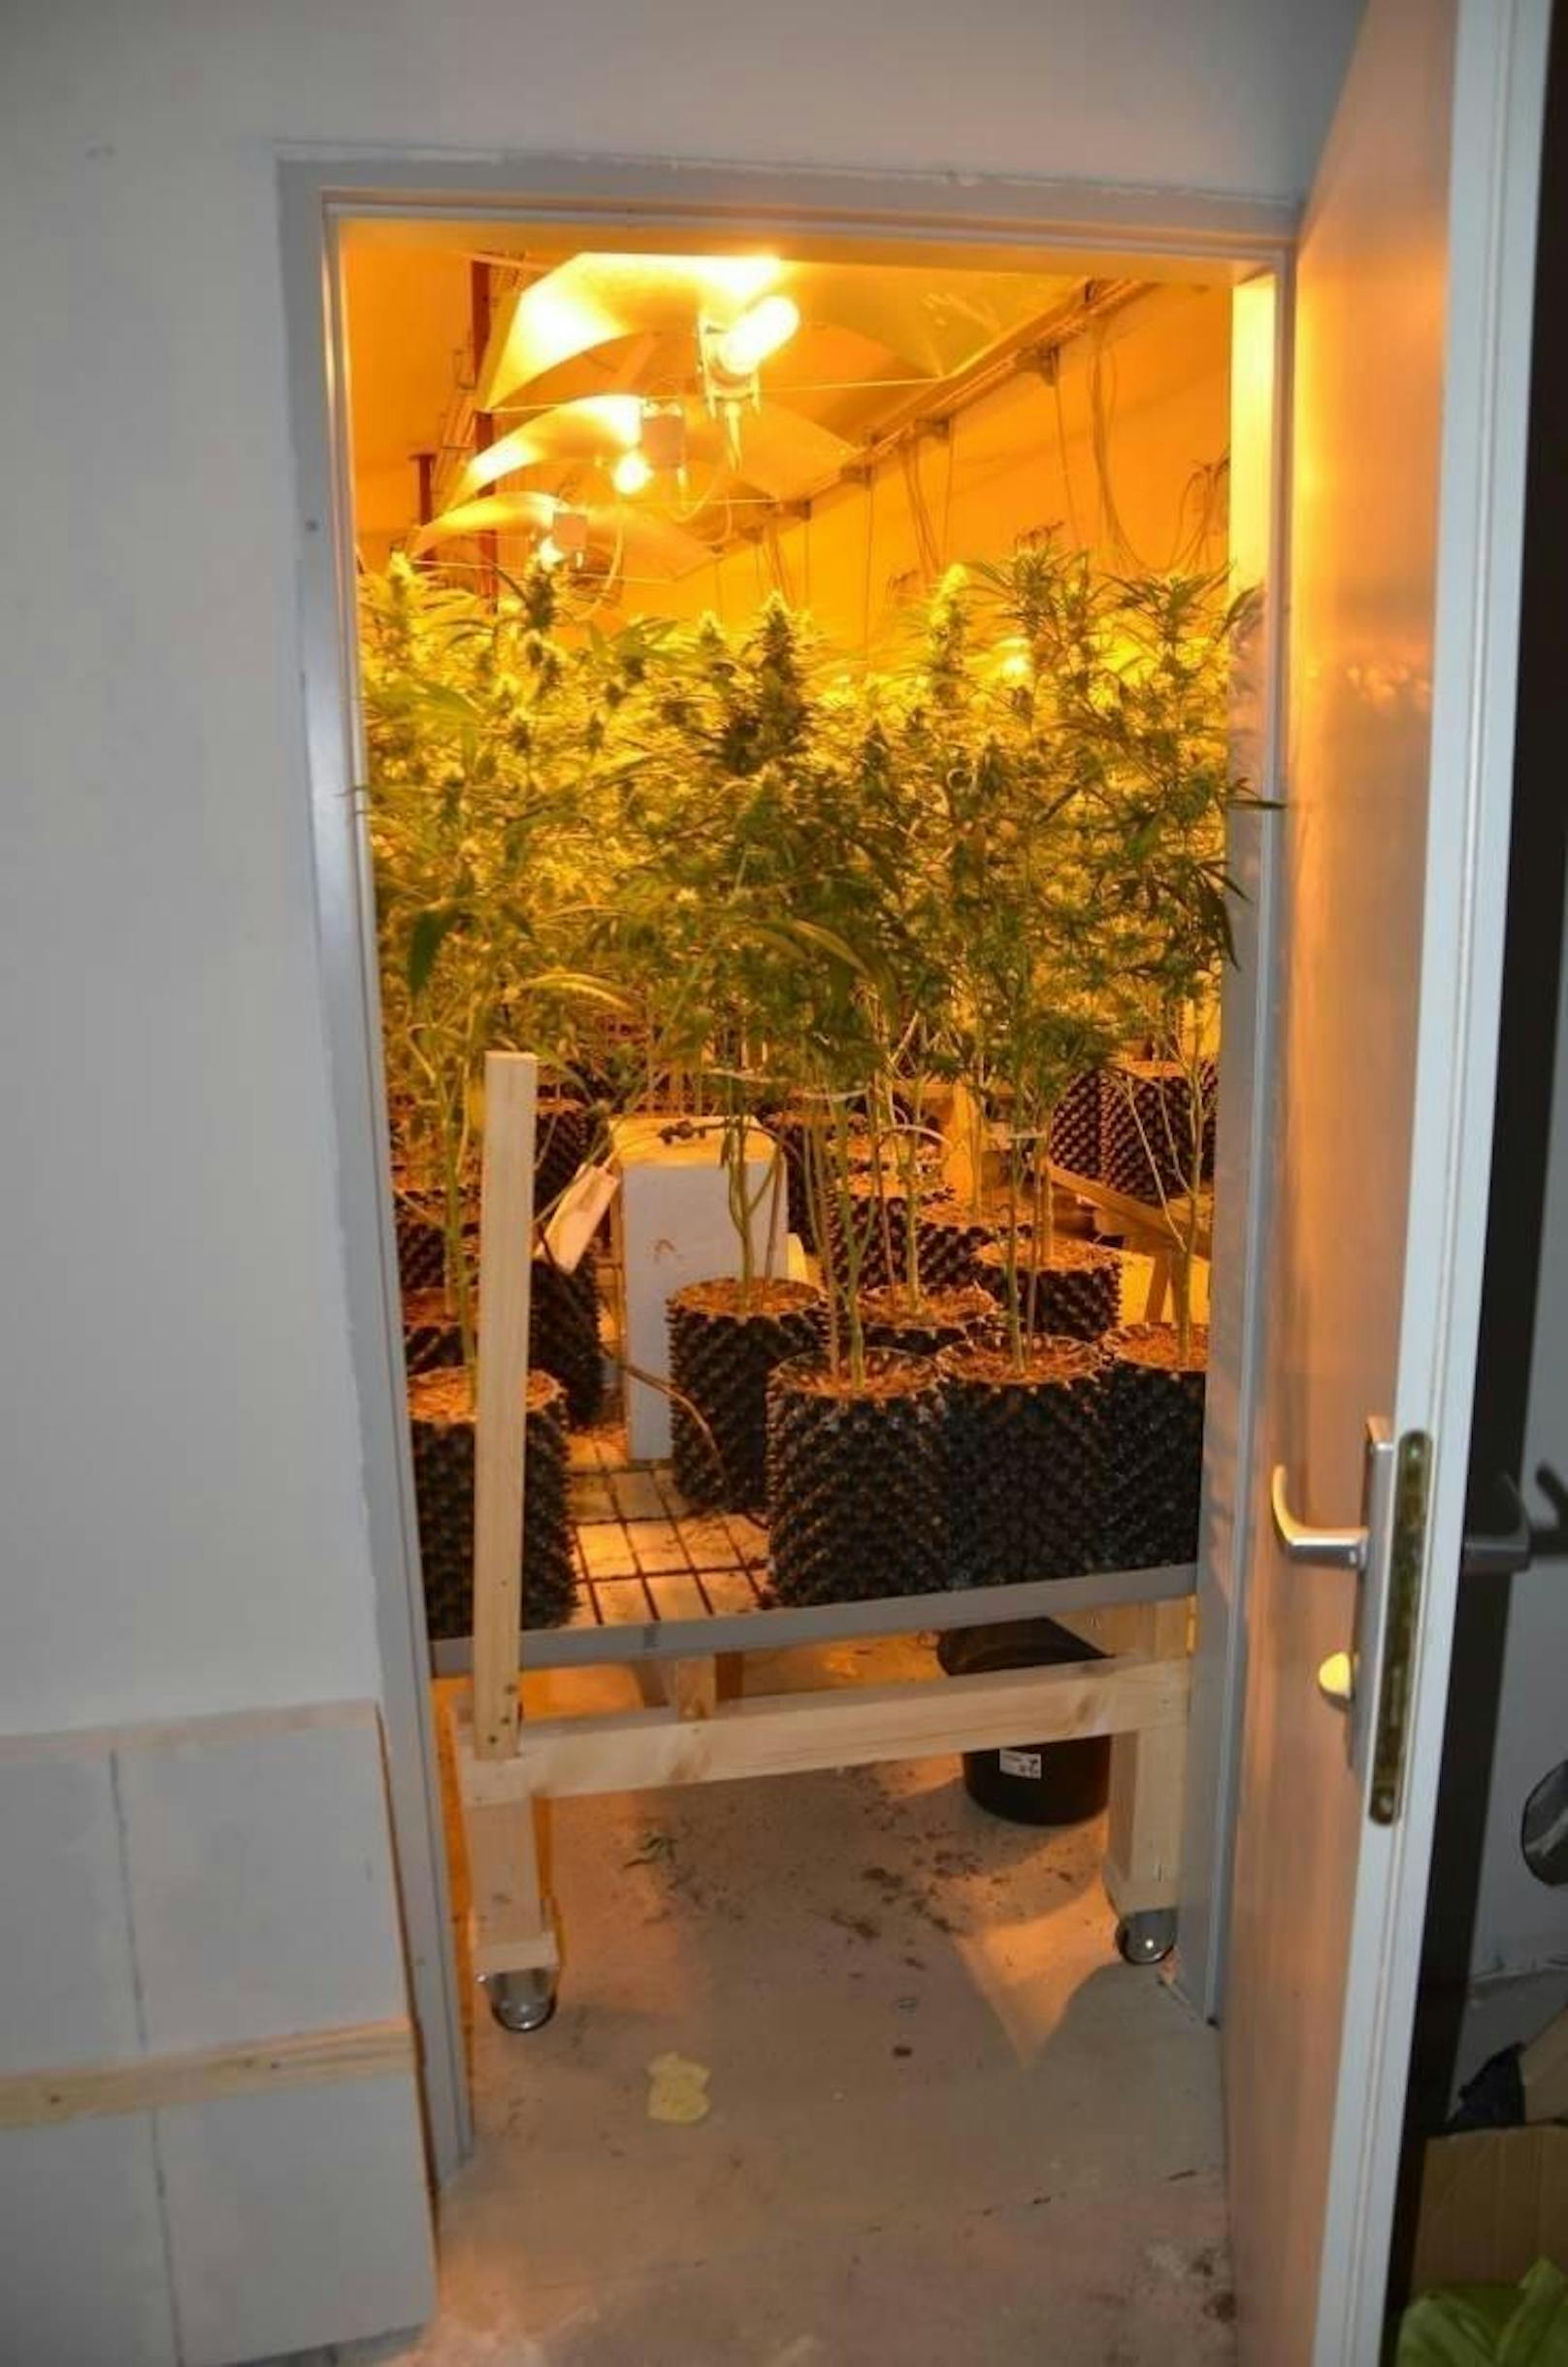 Im Keller eines Wohnhauses in der Redtenbachergasse in Wien-Ottakring stießen die Beamten auf eine Cannabisplantage